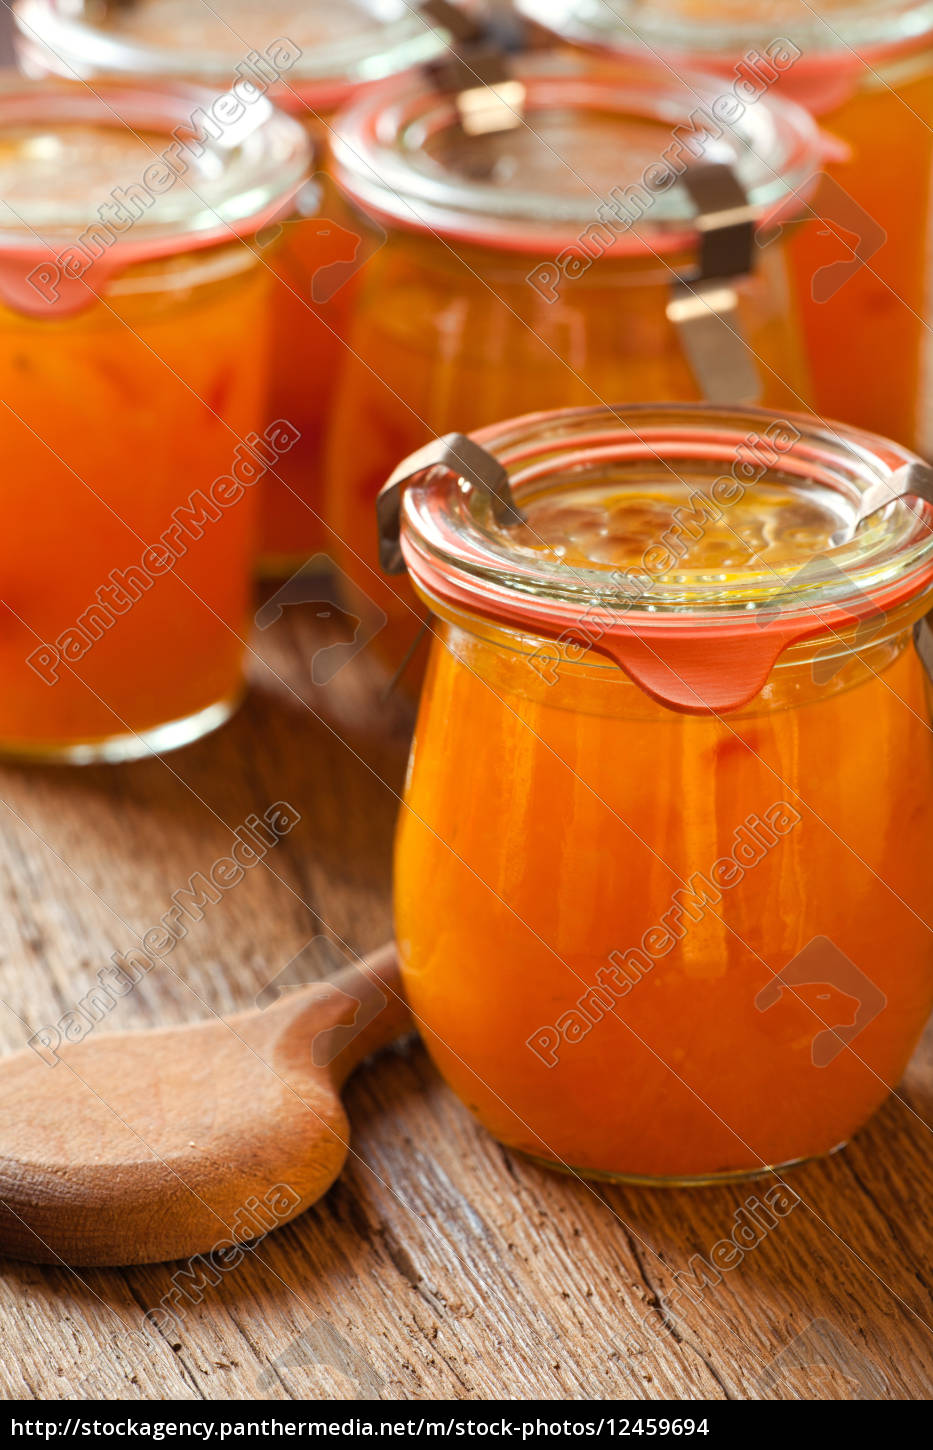 Hausgemachte Marmelade aus Melonen im Glas - Stock Photo - #12459694 ...